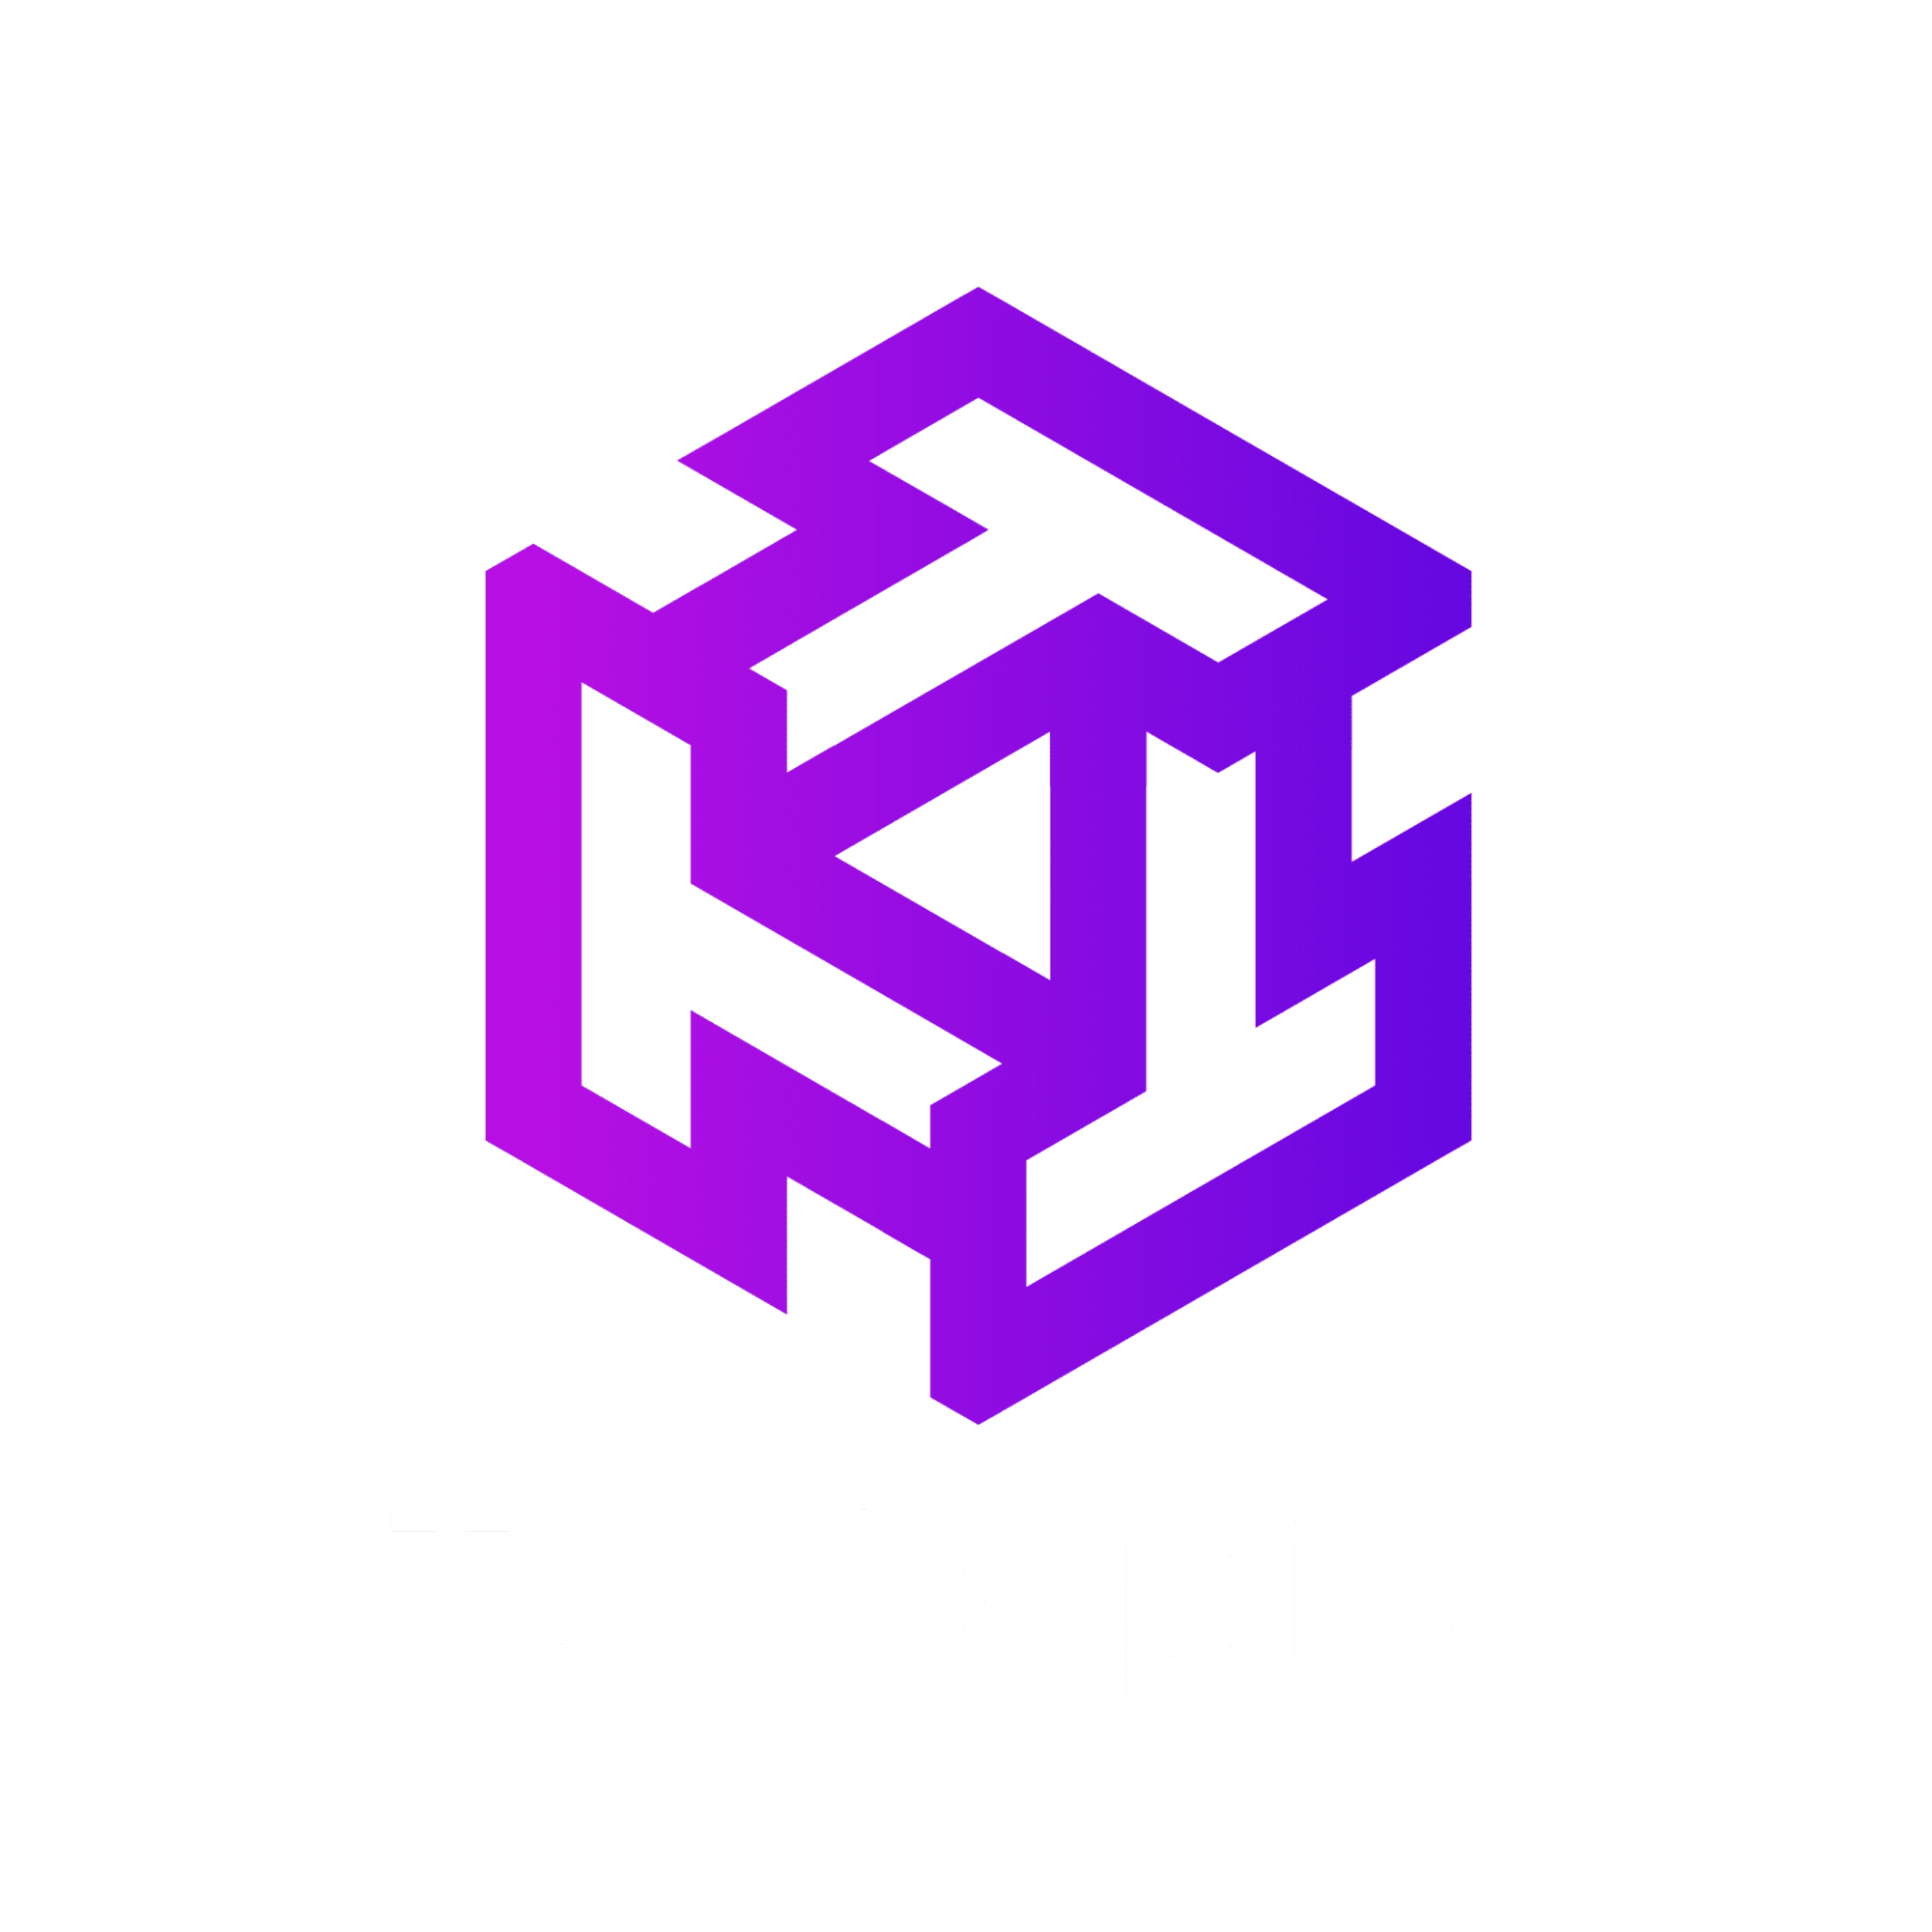 Textopia